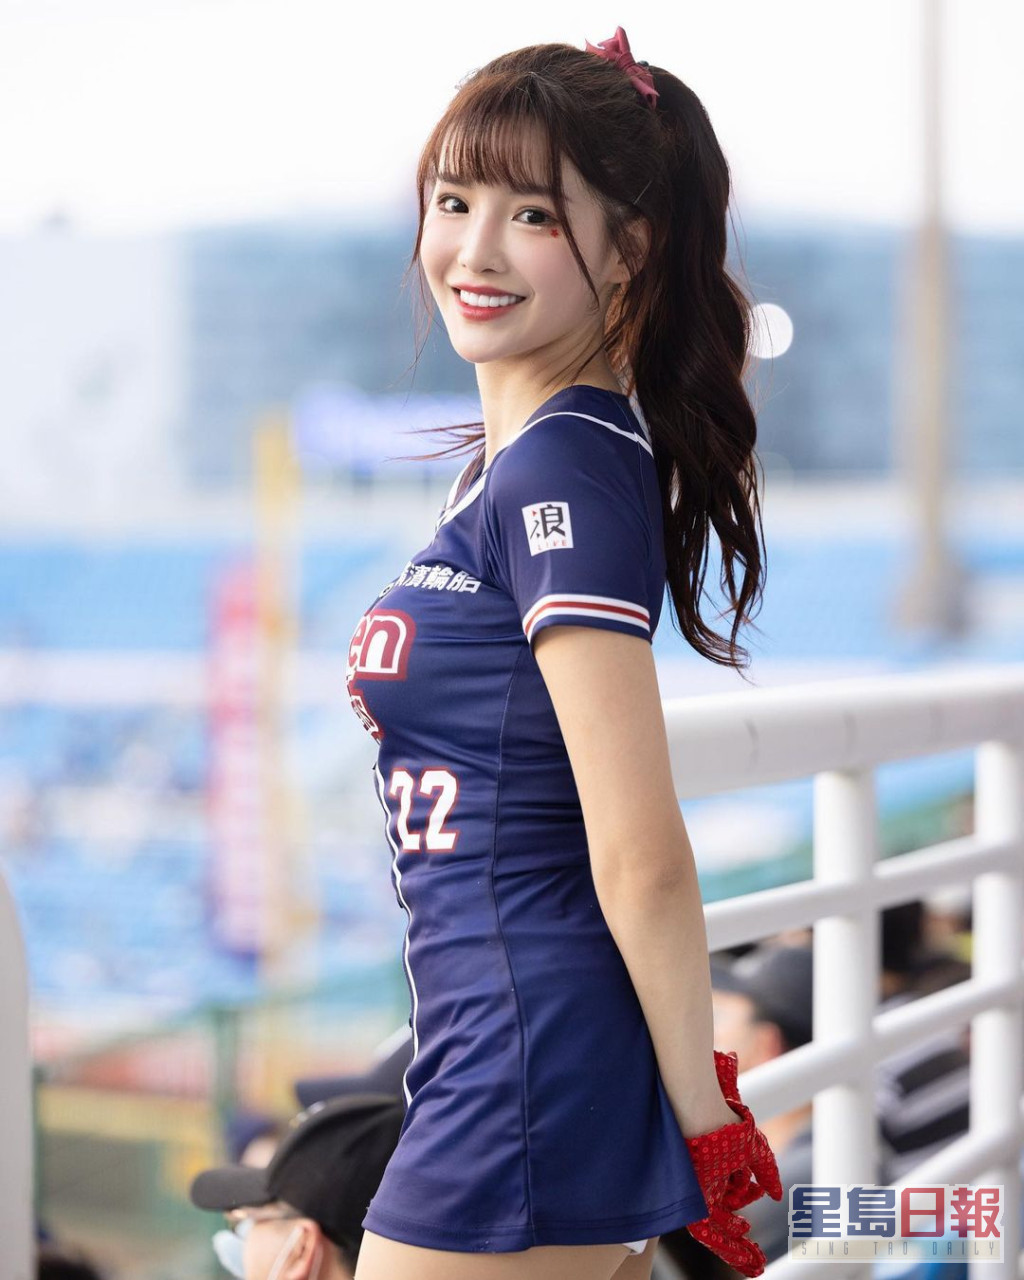 现年26岁的「菲菲」李庭瑀是乐天女孩（Rakuten Girls）现任副队长。